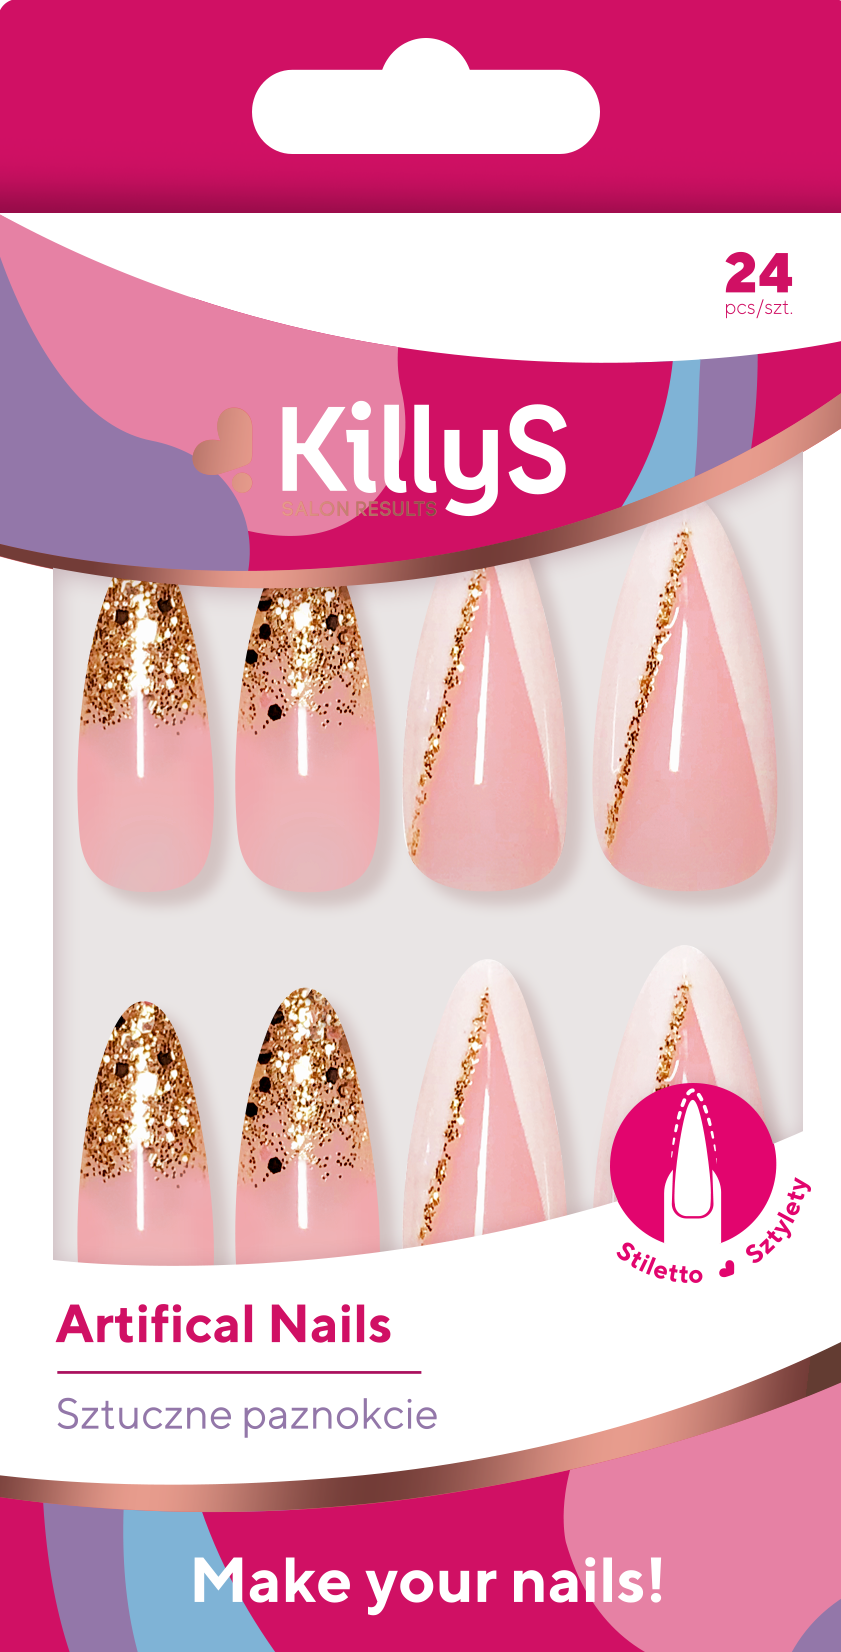 Искусственные ногти Killys Pink Glitter, 24 шт/1 упаковка